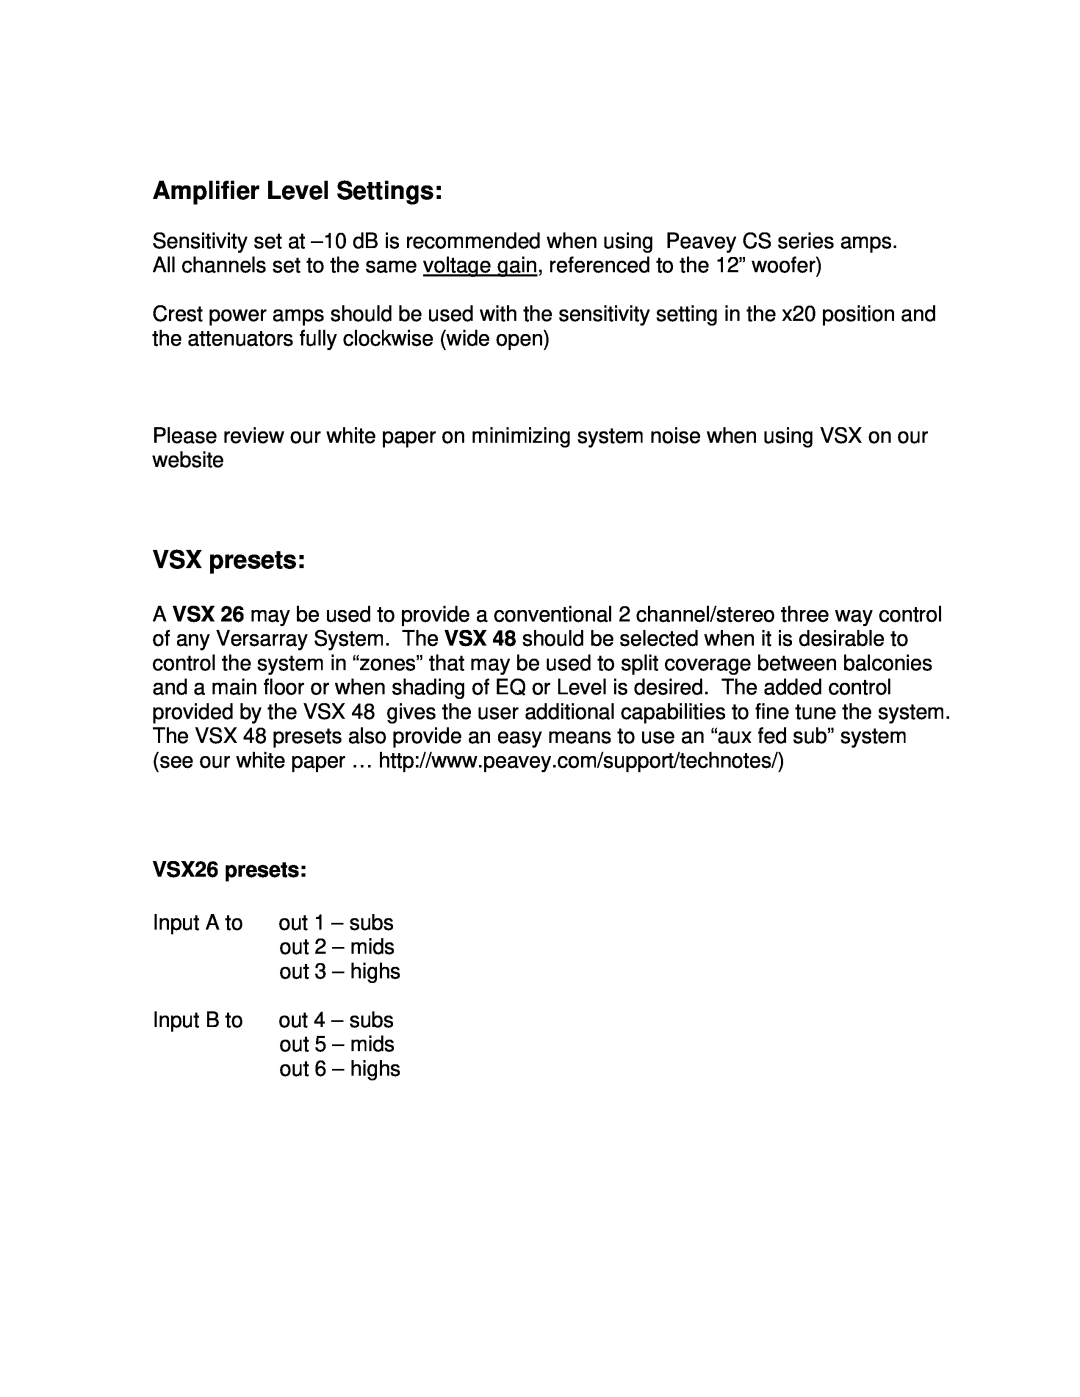 Peavey 48, VR112, VSX 26 manual Amplifier Level Settings, VSX presets, VSX26 presets 